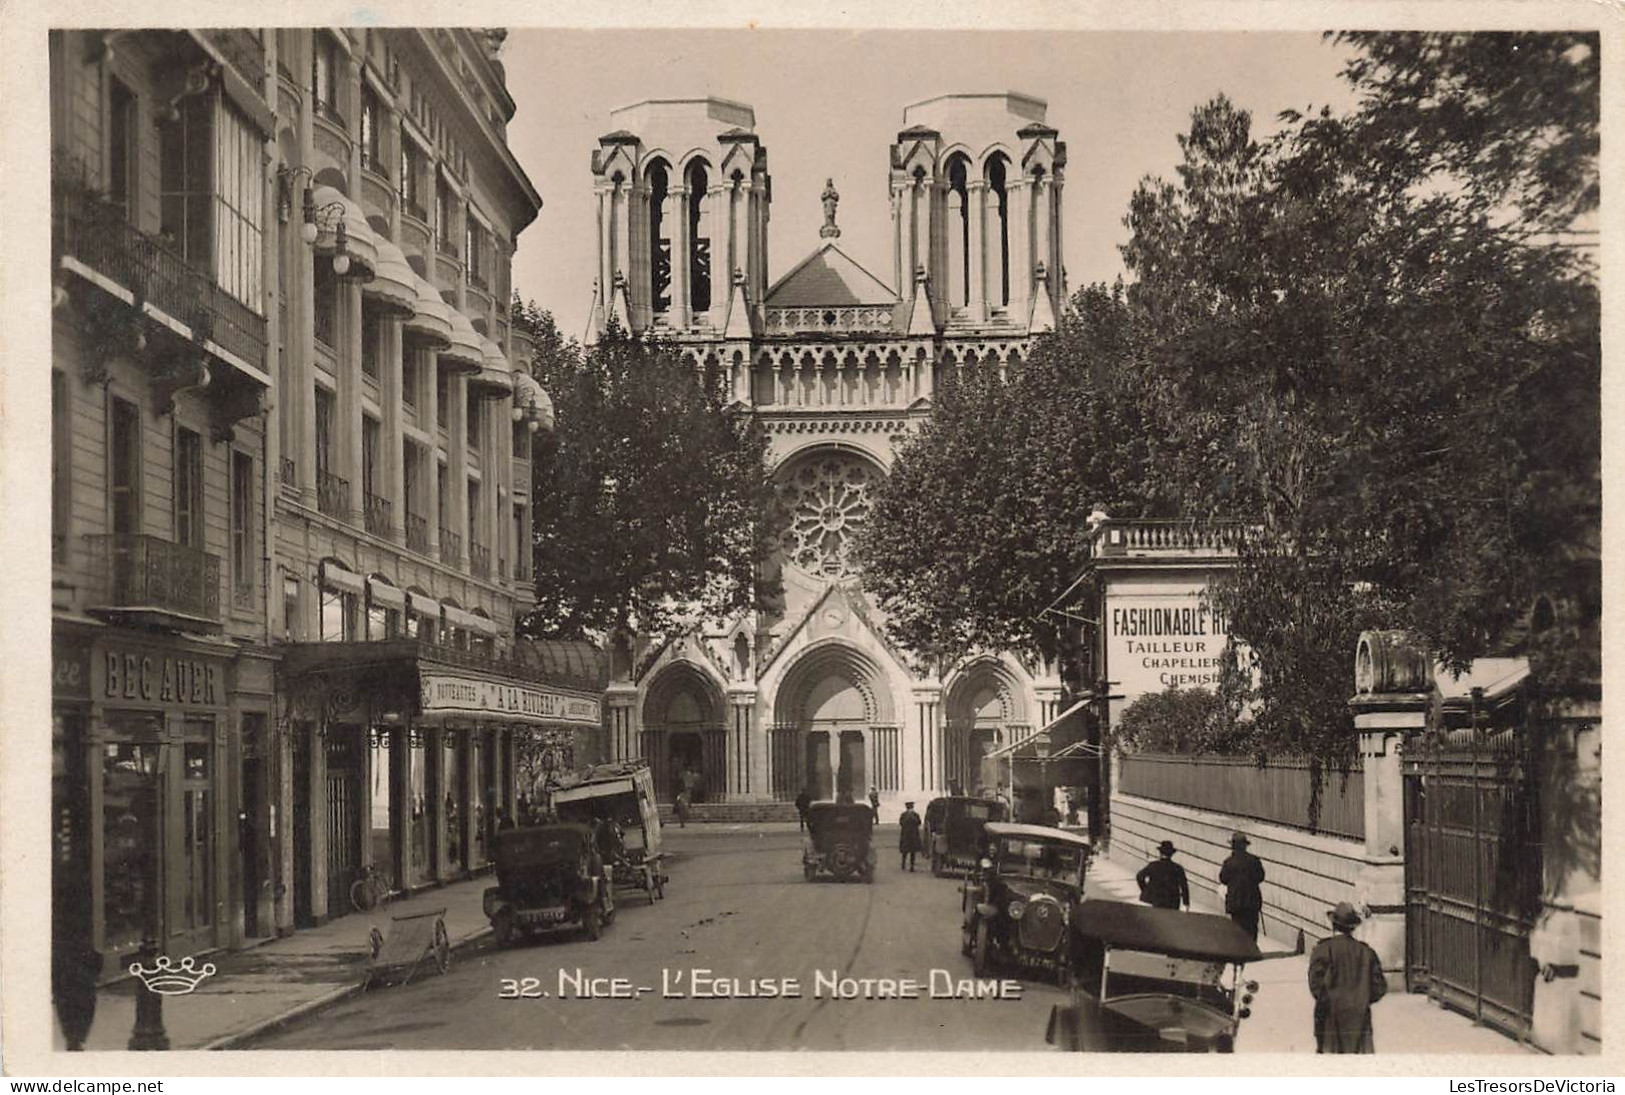 FRANCE - Nice - L'Eglise Notre Dame - Fashionable Tailleur Chapellier - Animé - Carte Postale Ancienne - Monumenten, Gebouwen